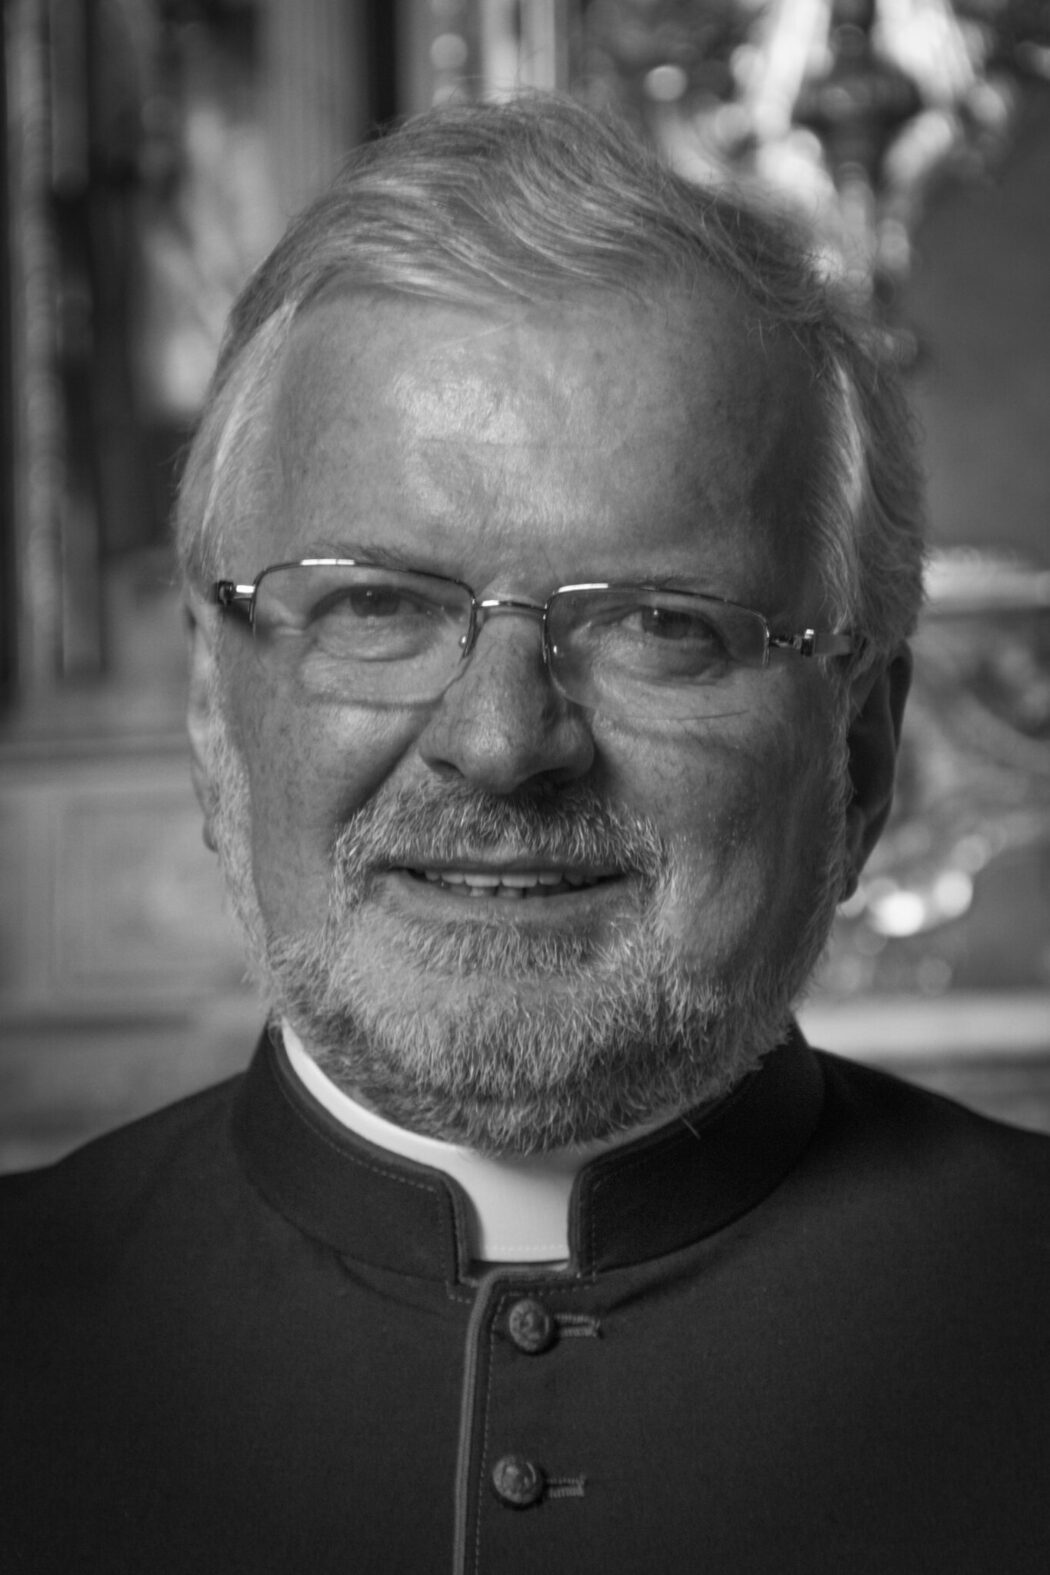 Demande de prières pour le rétablissement de Monseigneur Giordano